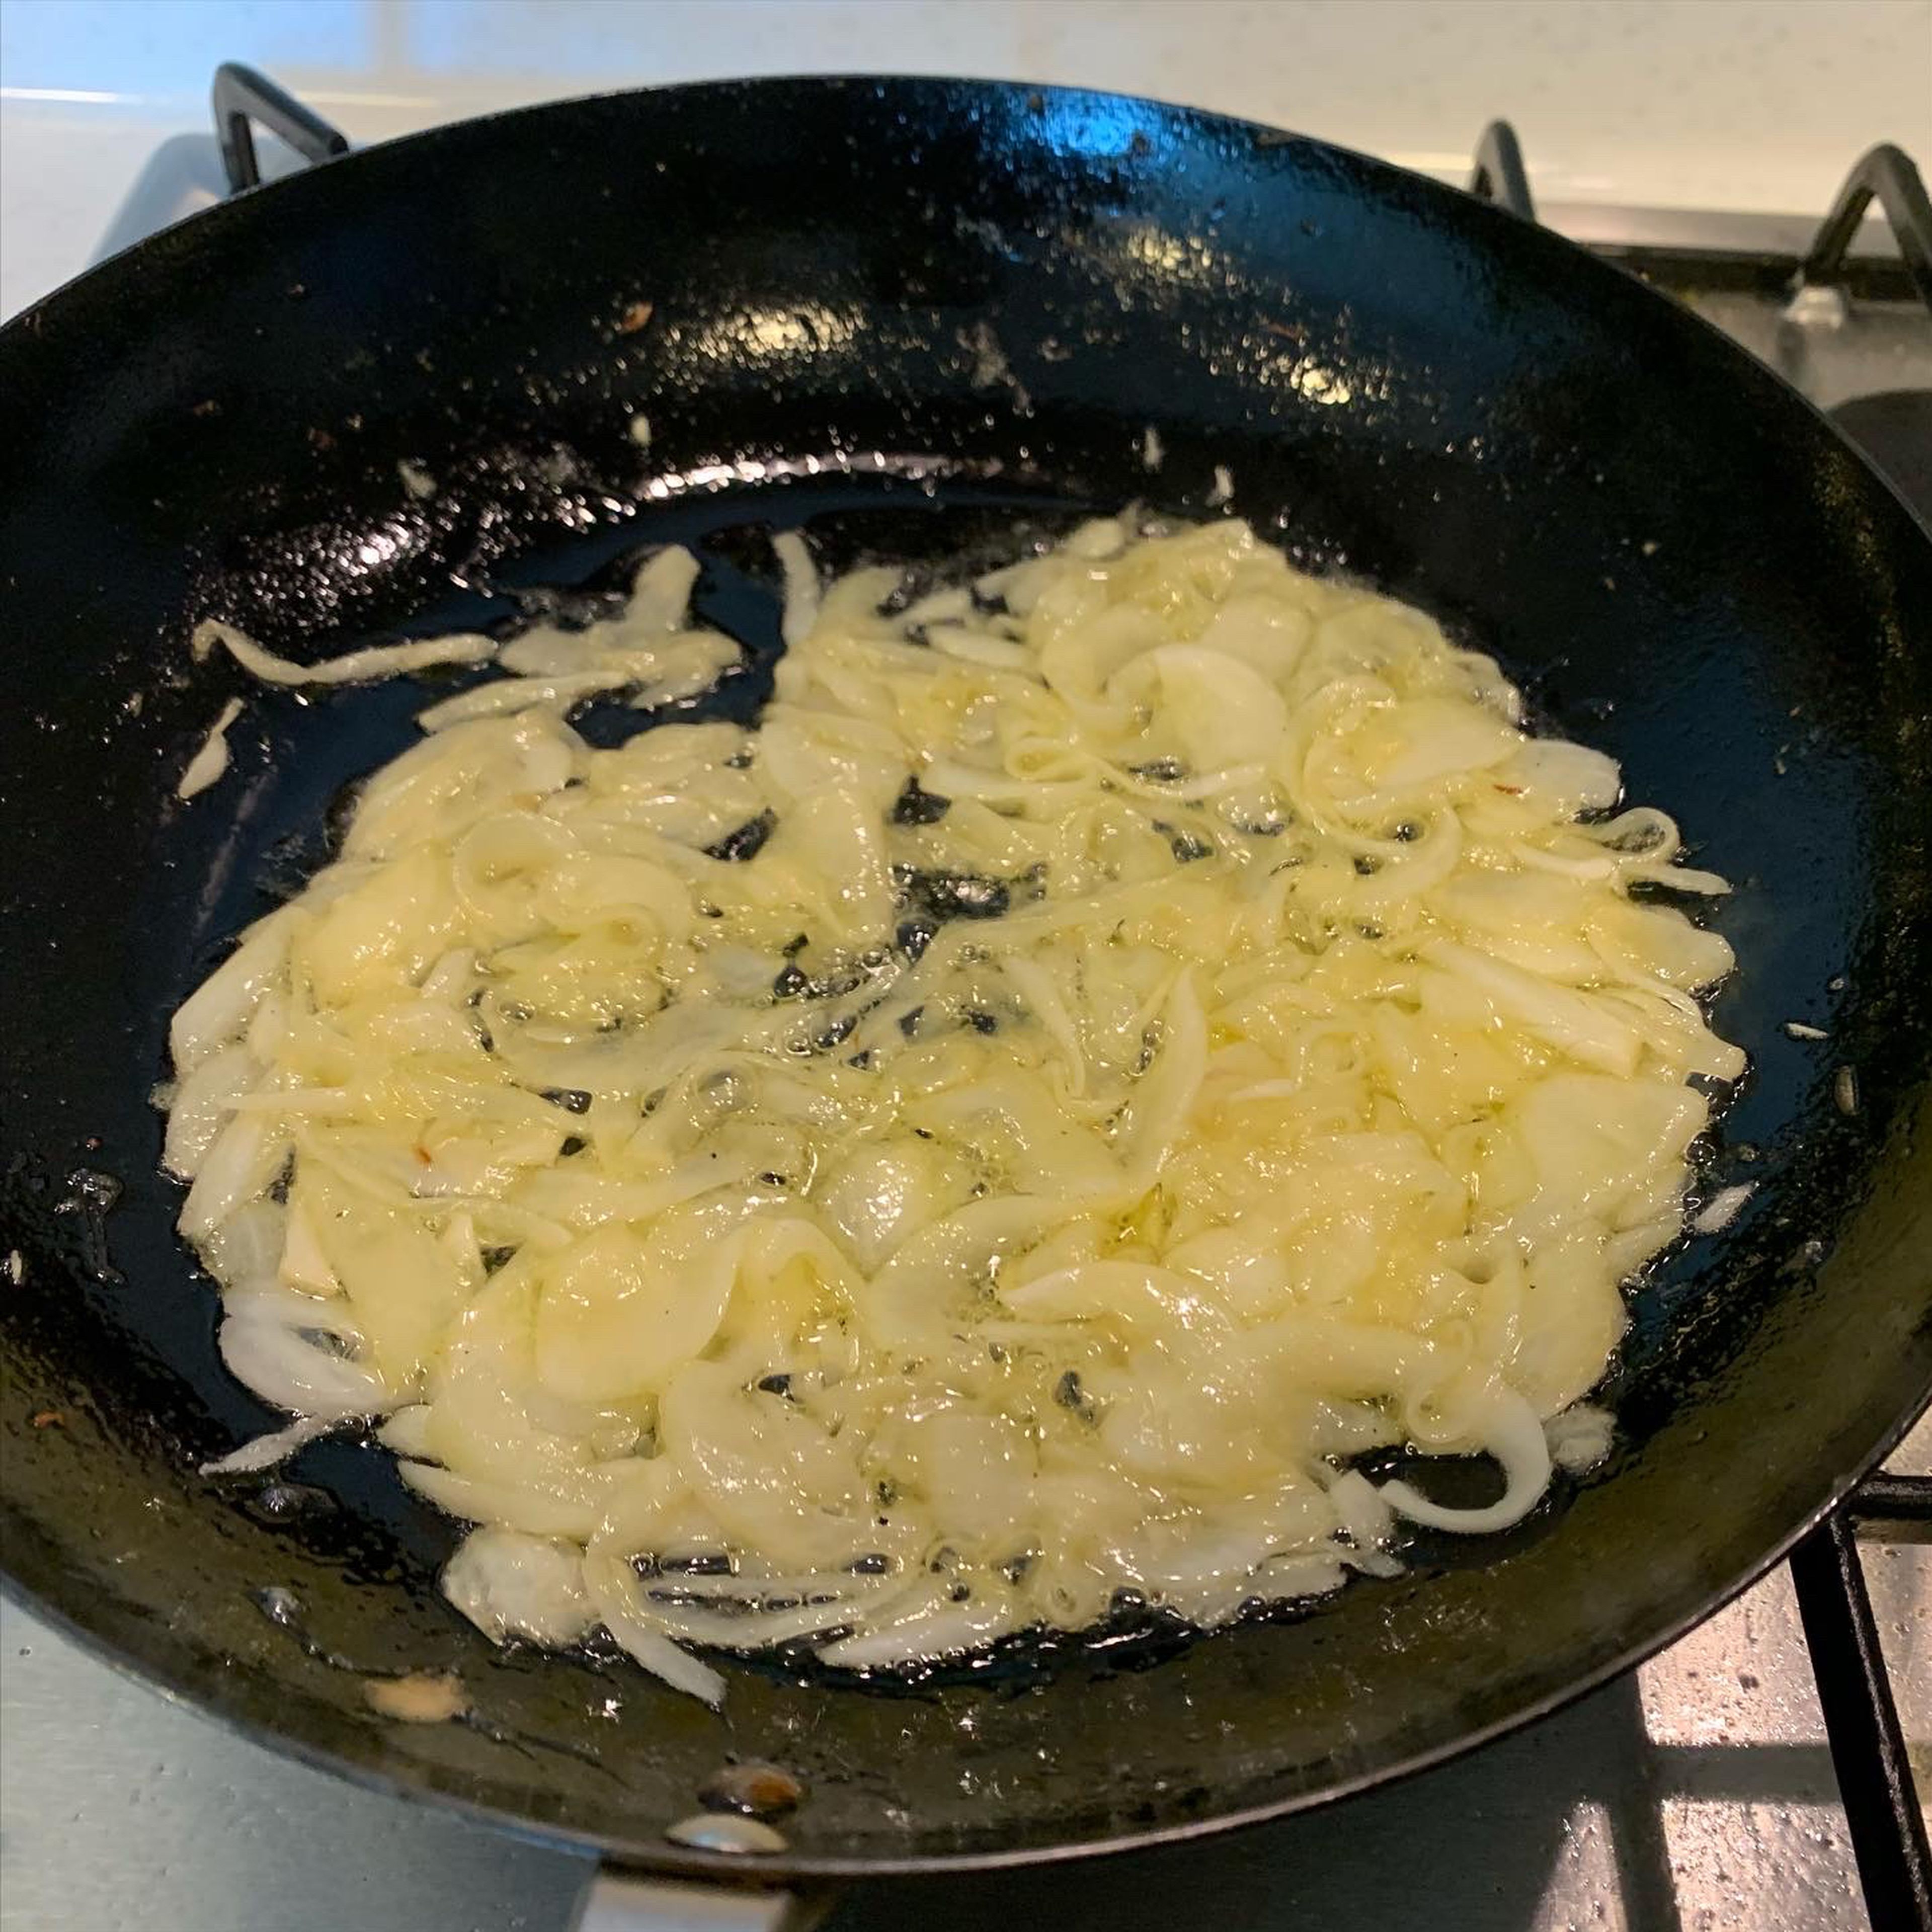 Sauté onion with butter